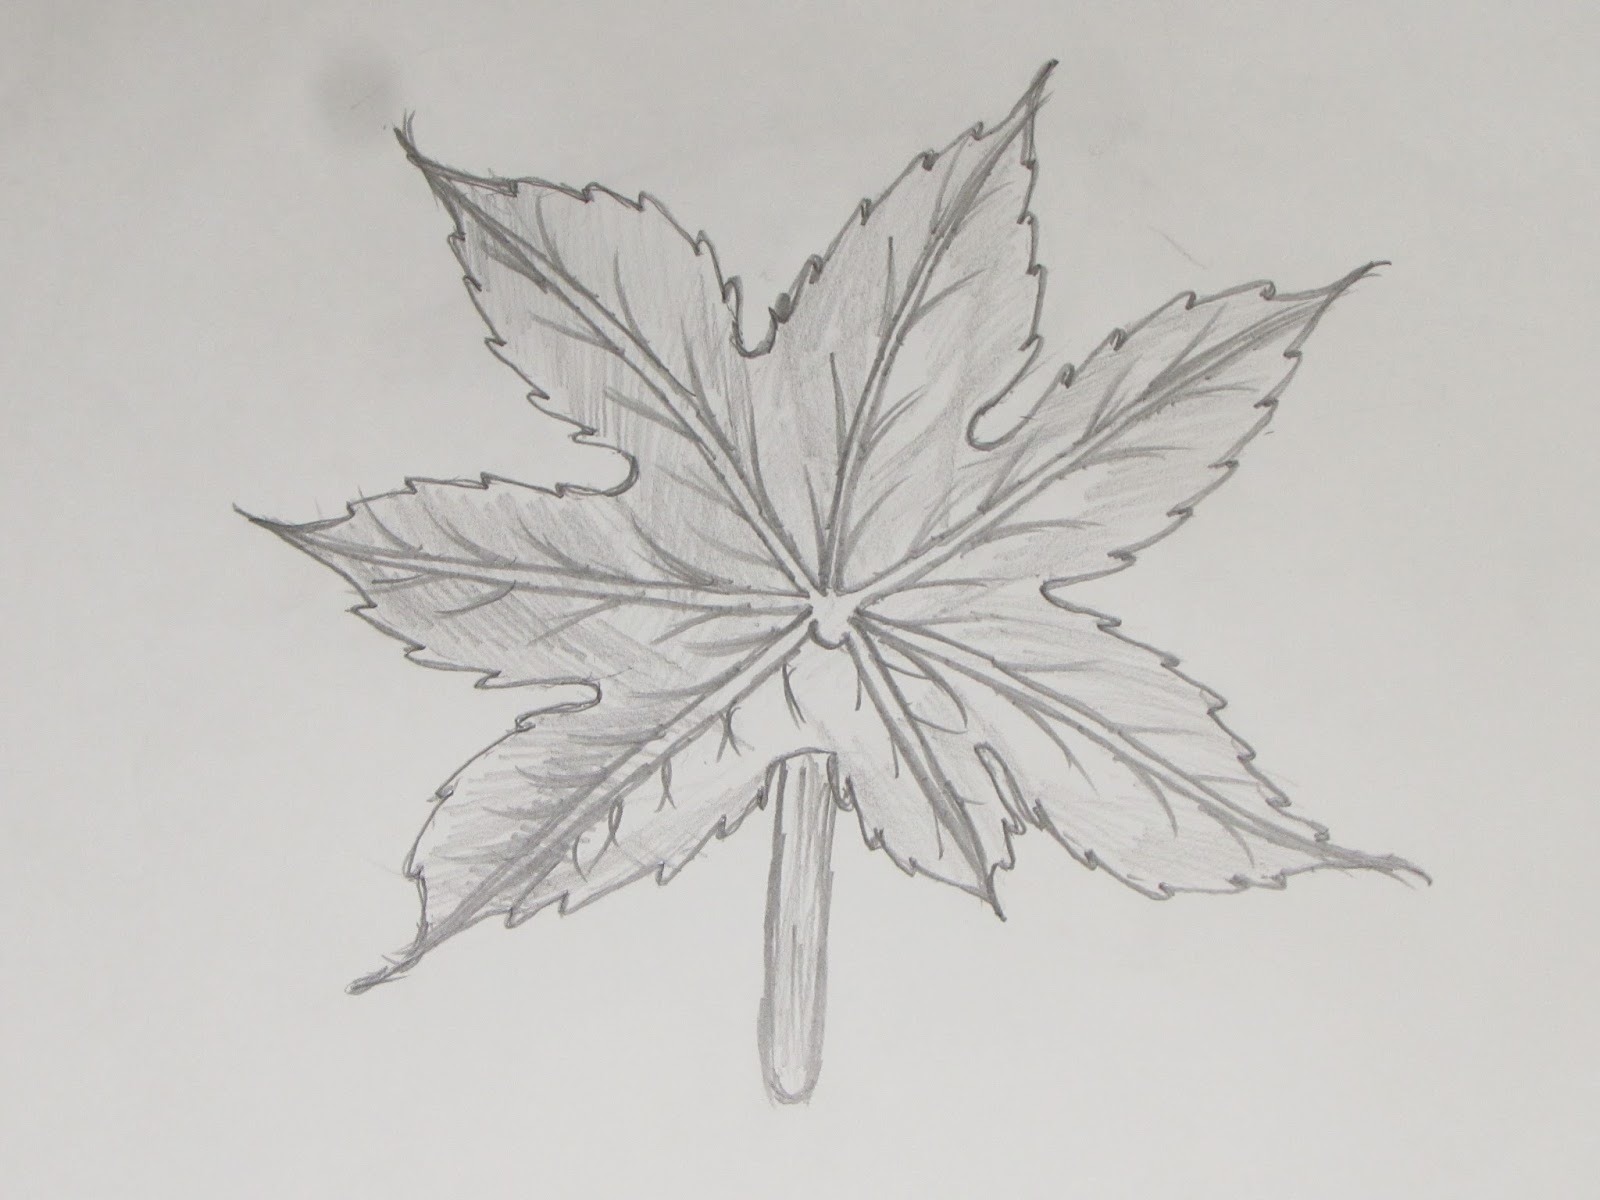 Картинка лист карандашом. Листья карандашом. Листья для срисовки карандашом. Рисунок листьев карандашом. Зарисовки листьев карандашом.